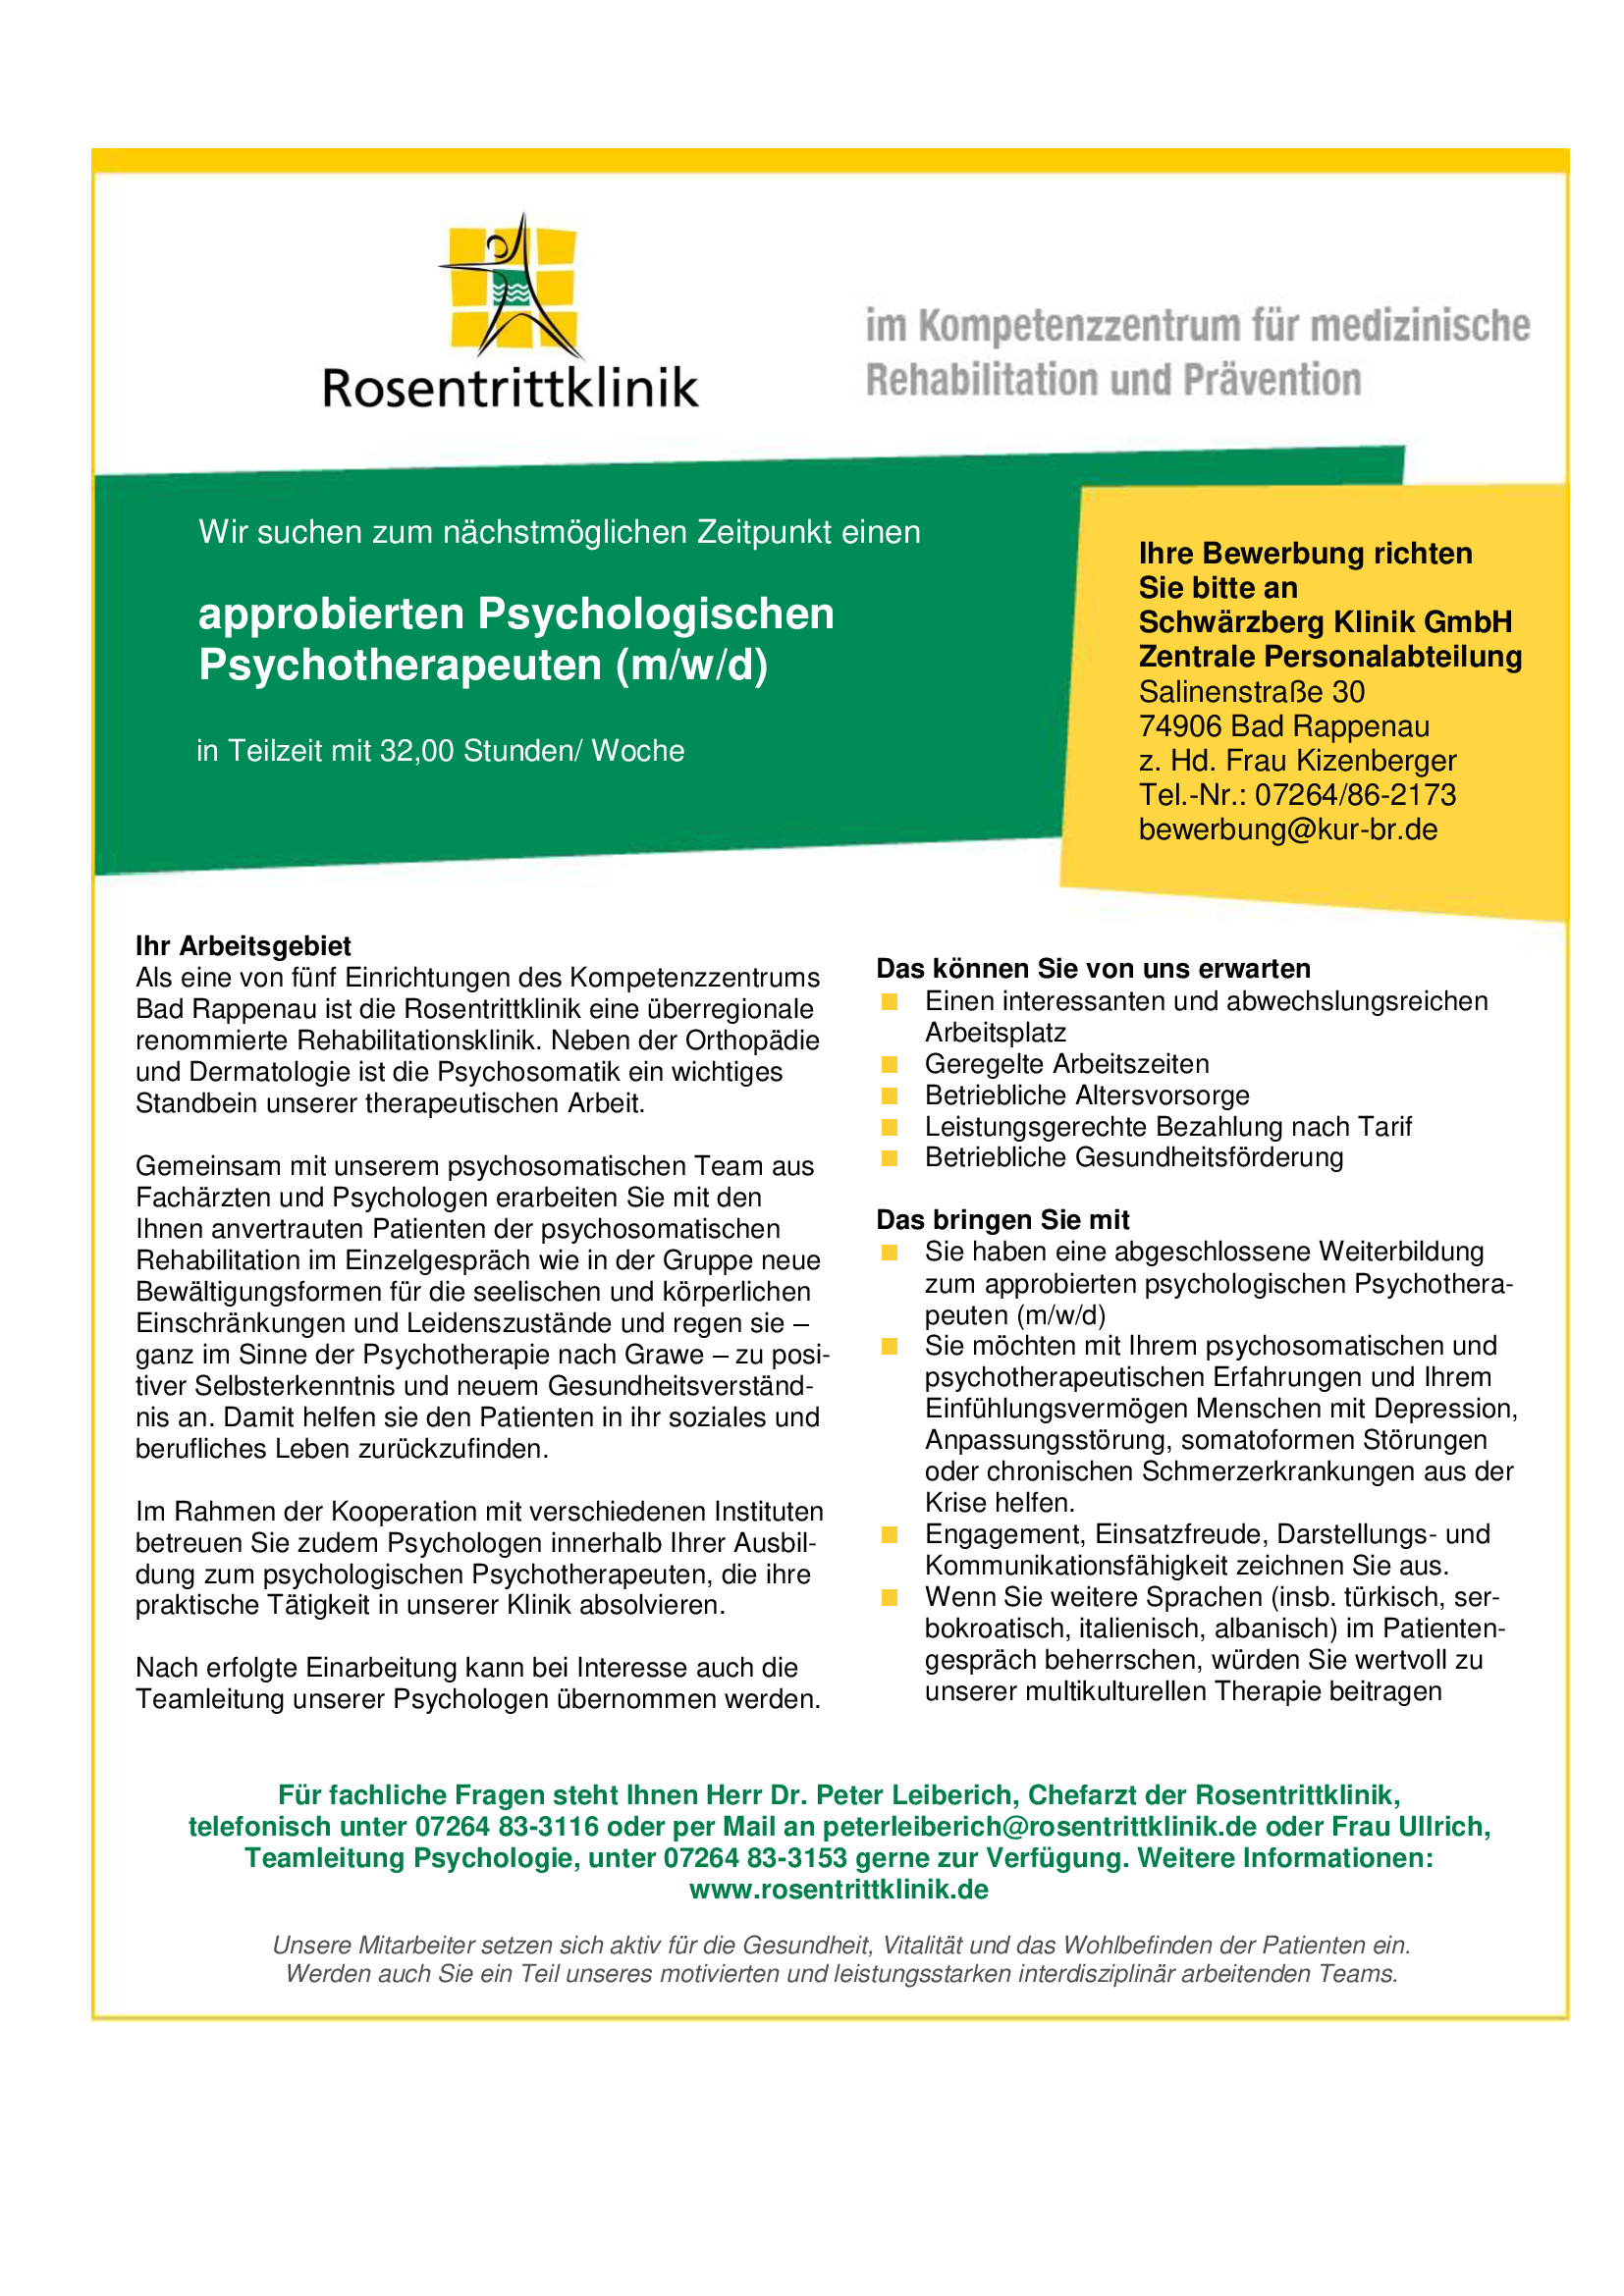 [03/2020] Rosentrittklinik Bad Rappenau: approbierter Psychologischer Psychotherapeut (m/w/d) in Teilzeit